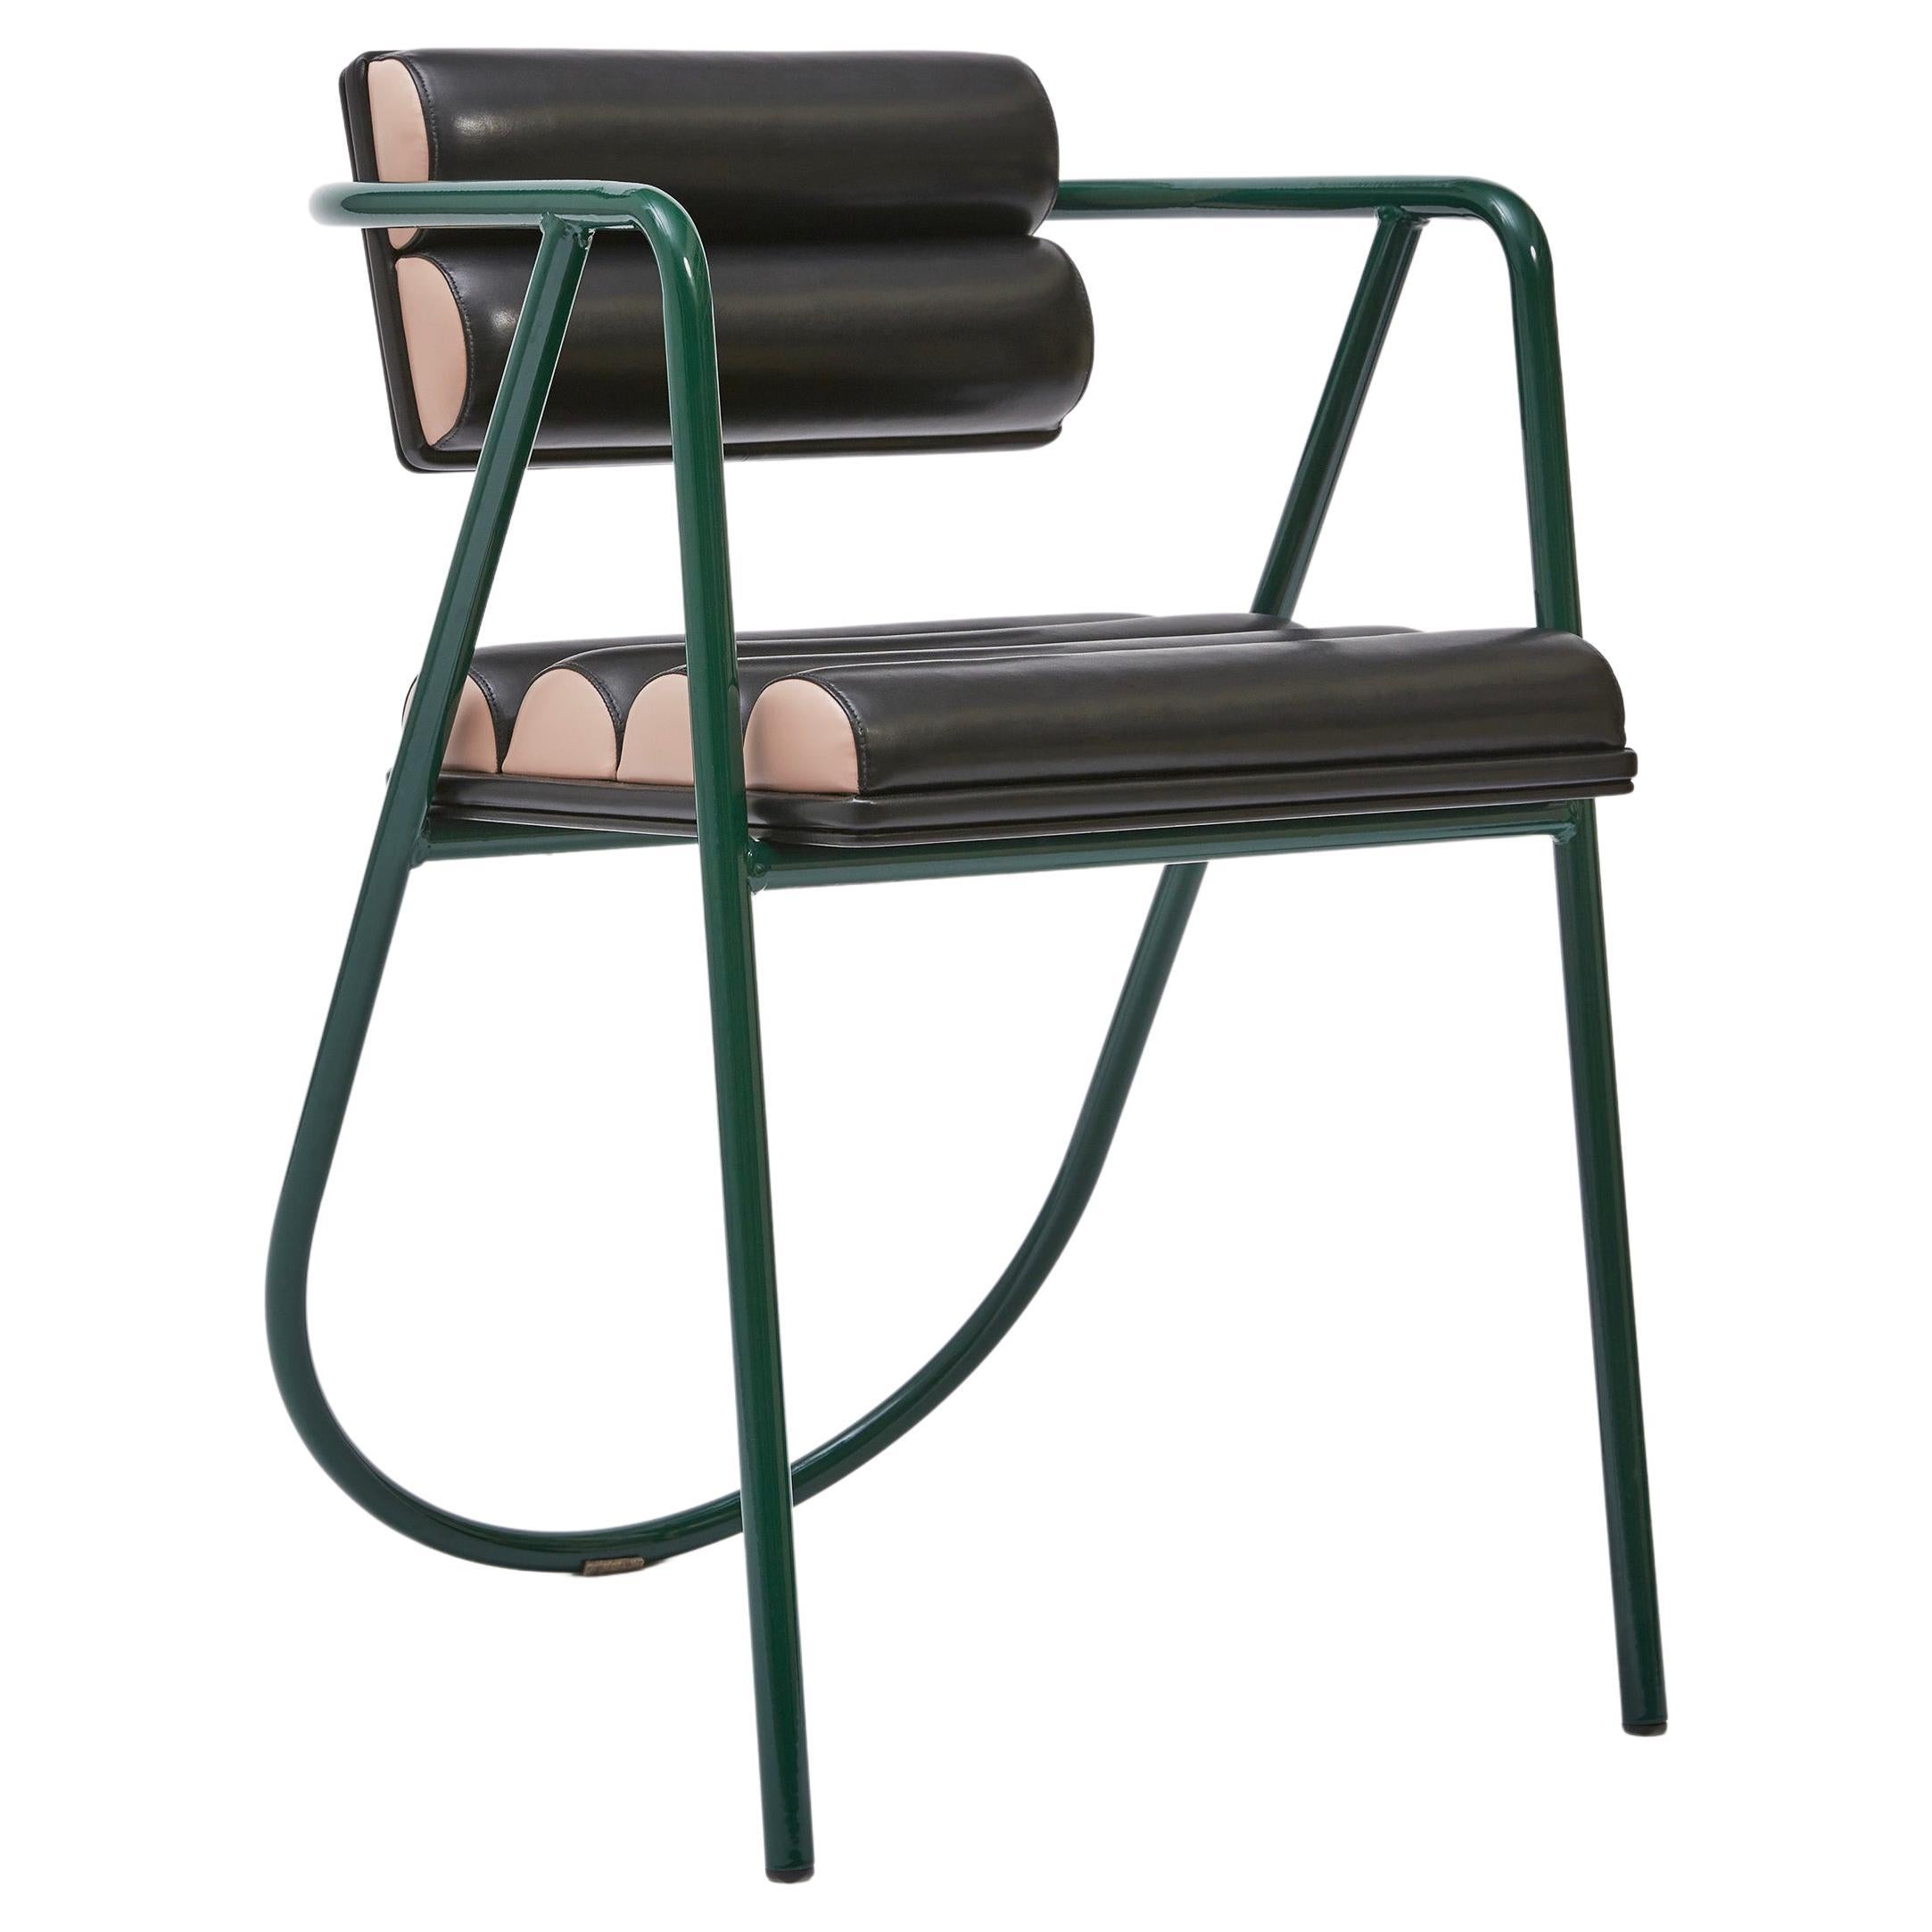 La Misciù Spring Chair For Sale